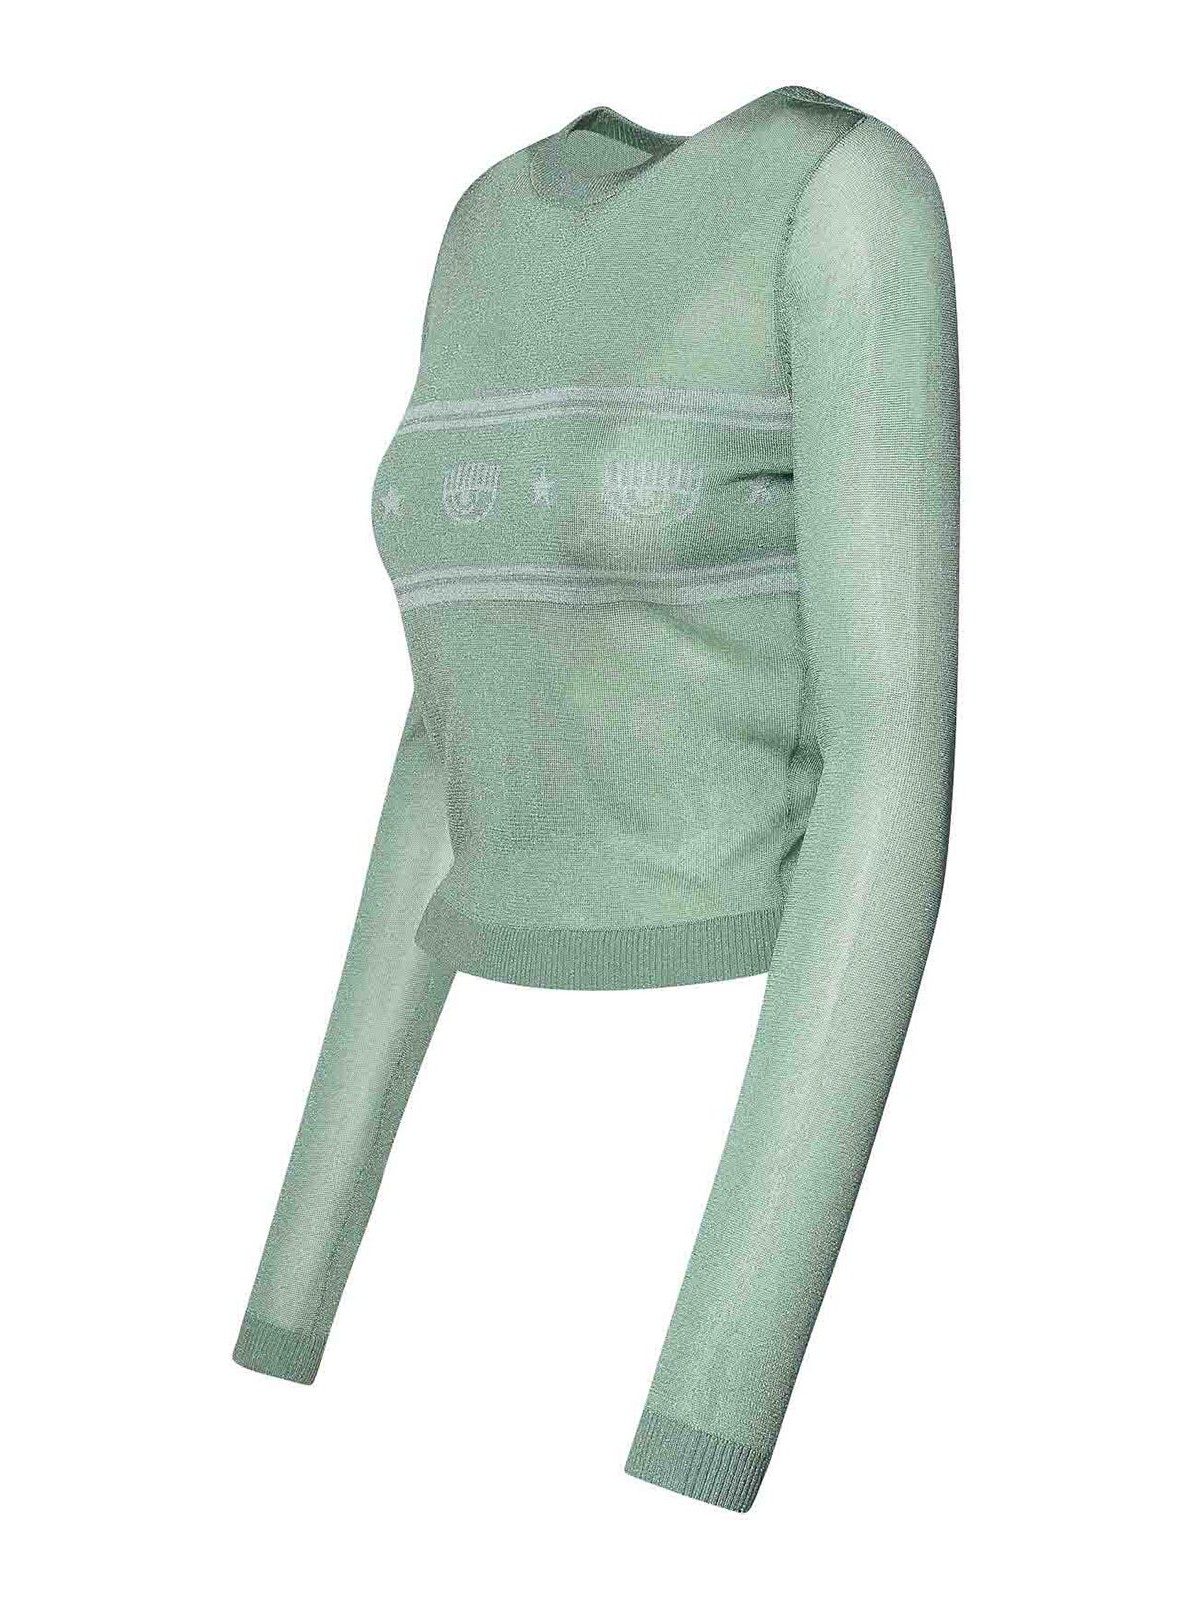 Shop Chiara Ferragni Green Viscose Blend Sweater